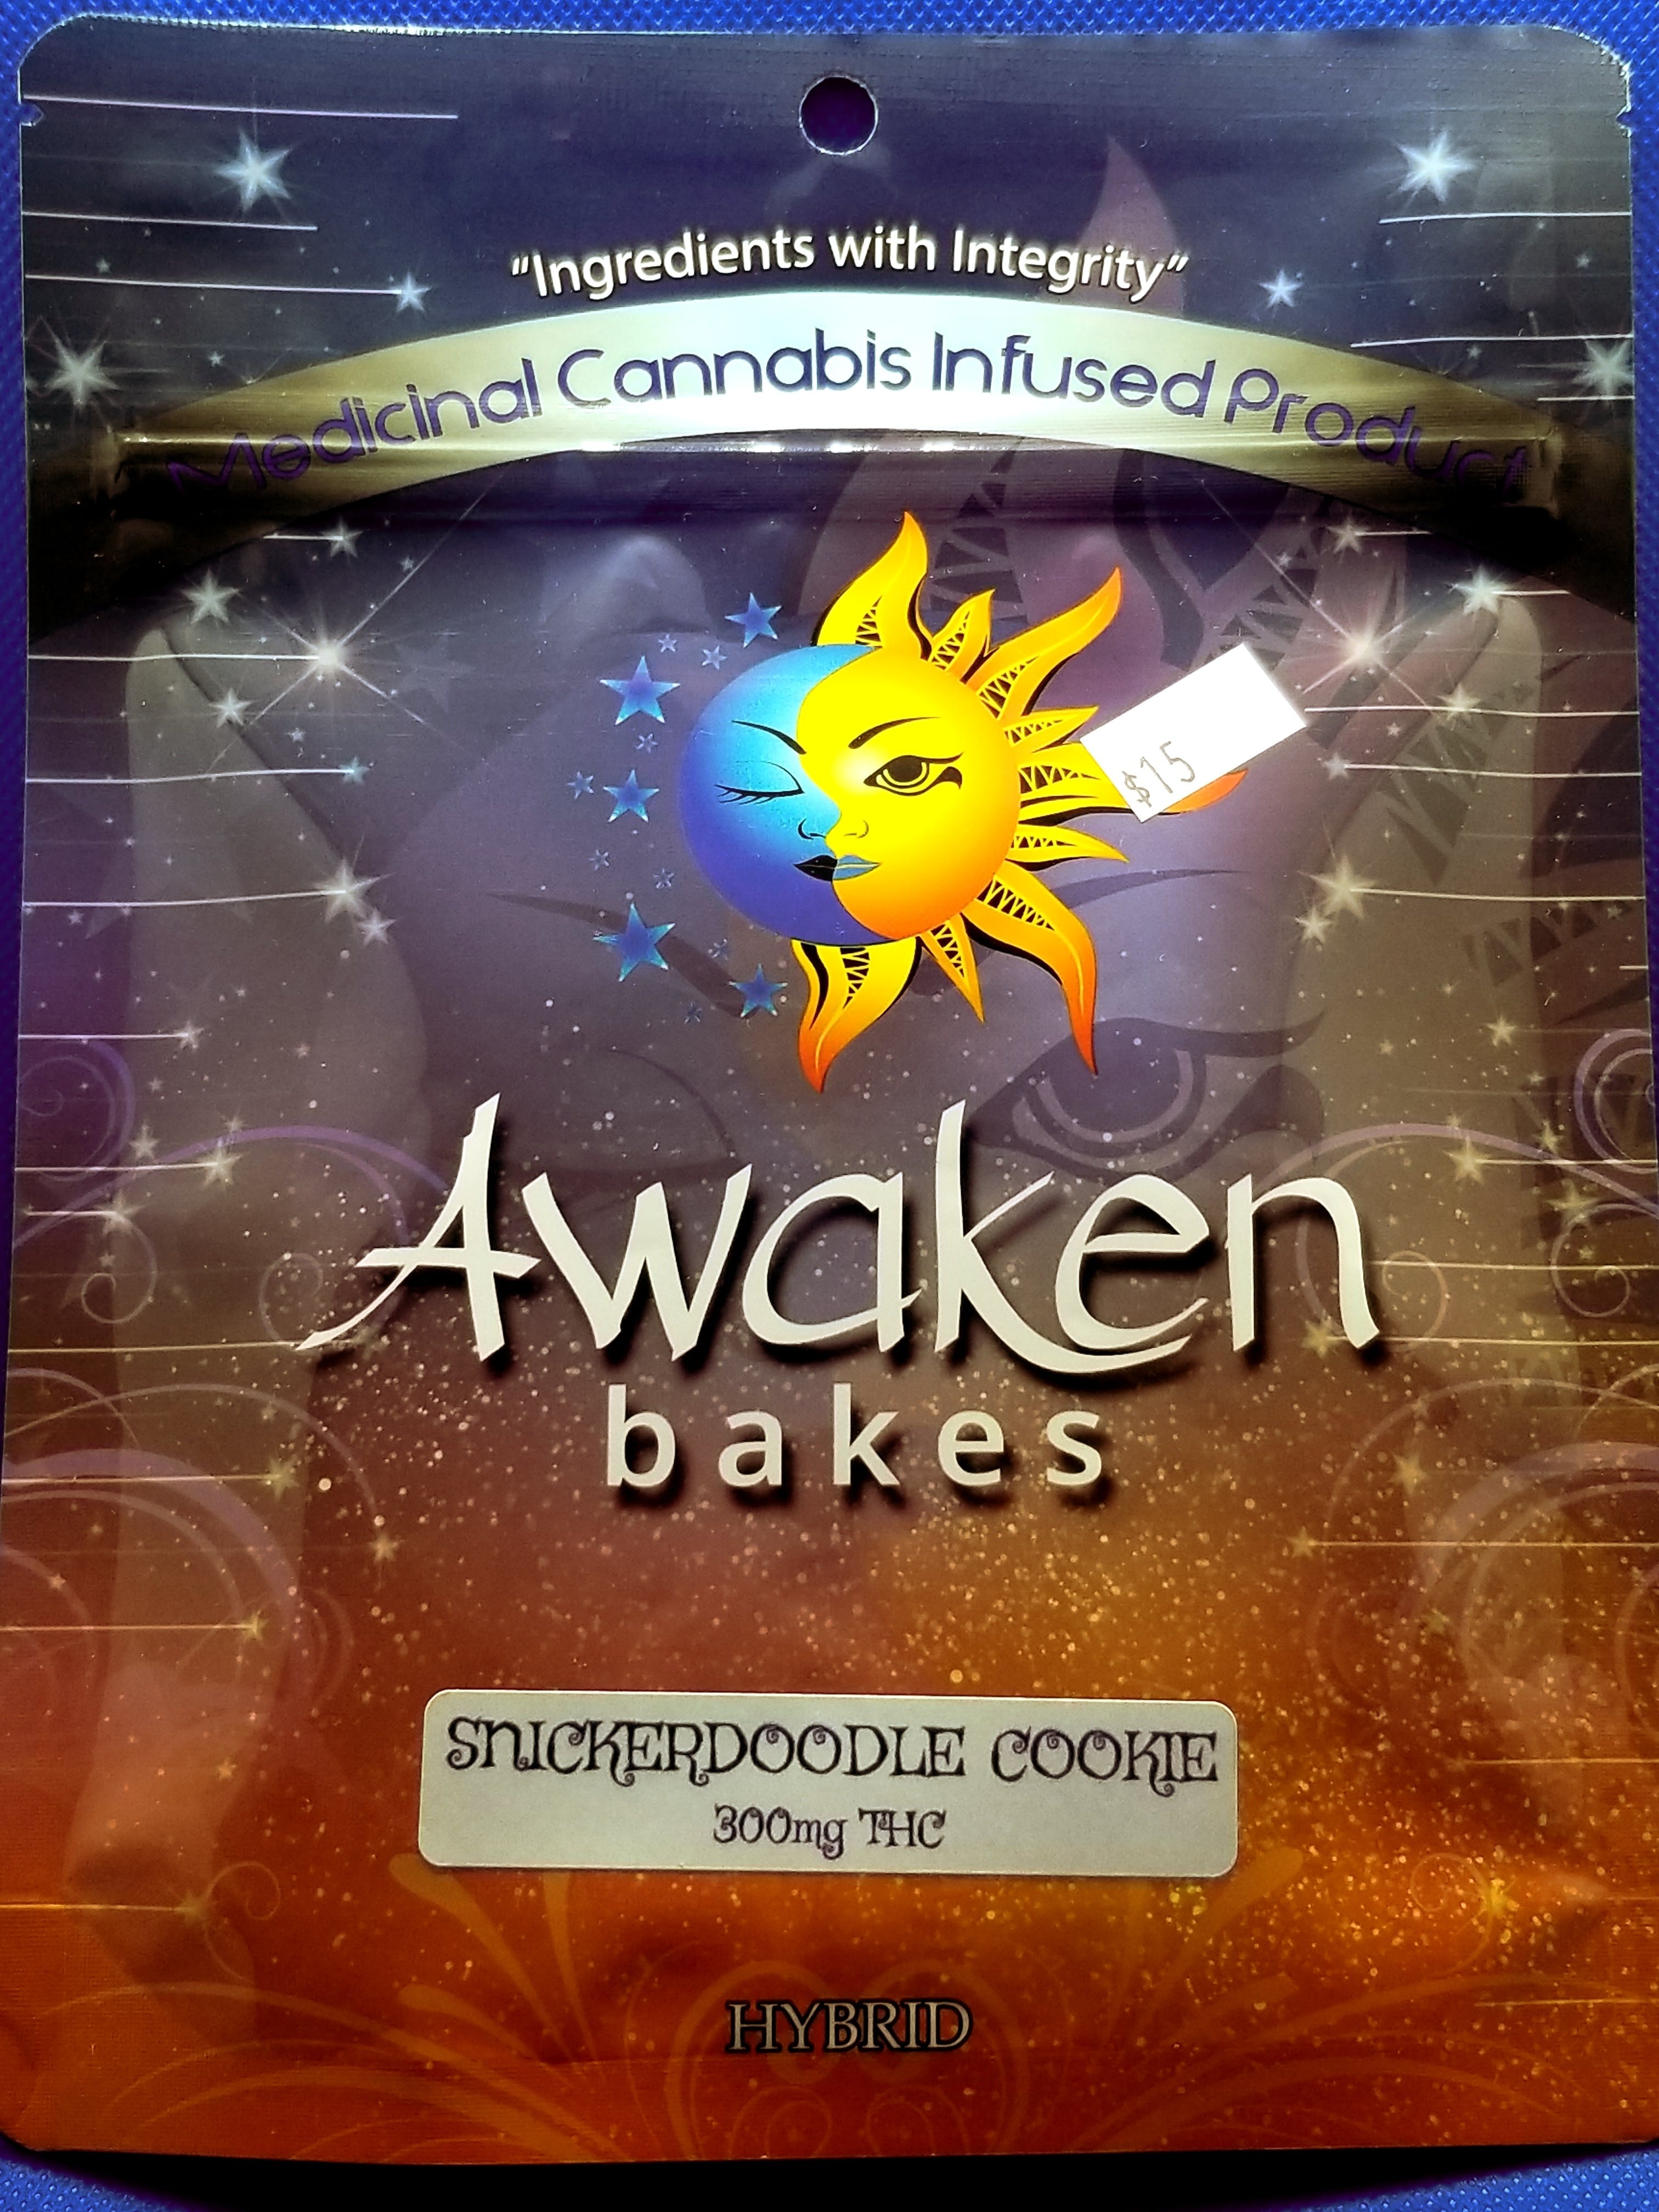 marijuana-dispensaries-1609-east-chapman-ave-orange-awaken-bakes-snicker-doodle-300mg-hybrid